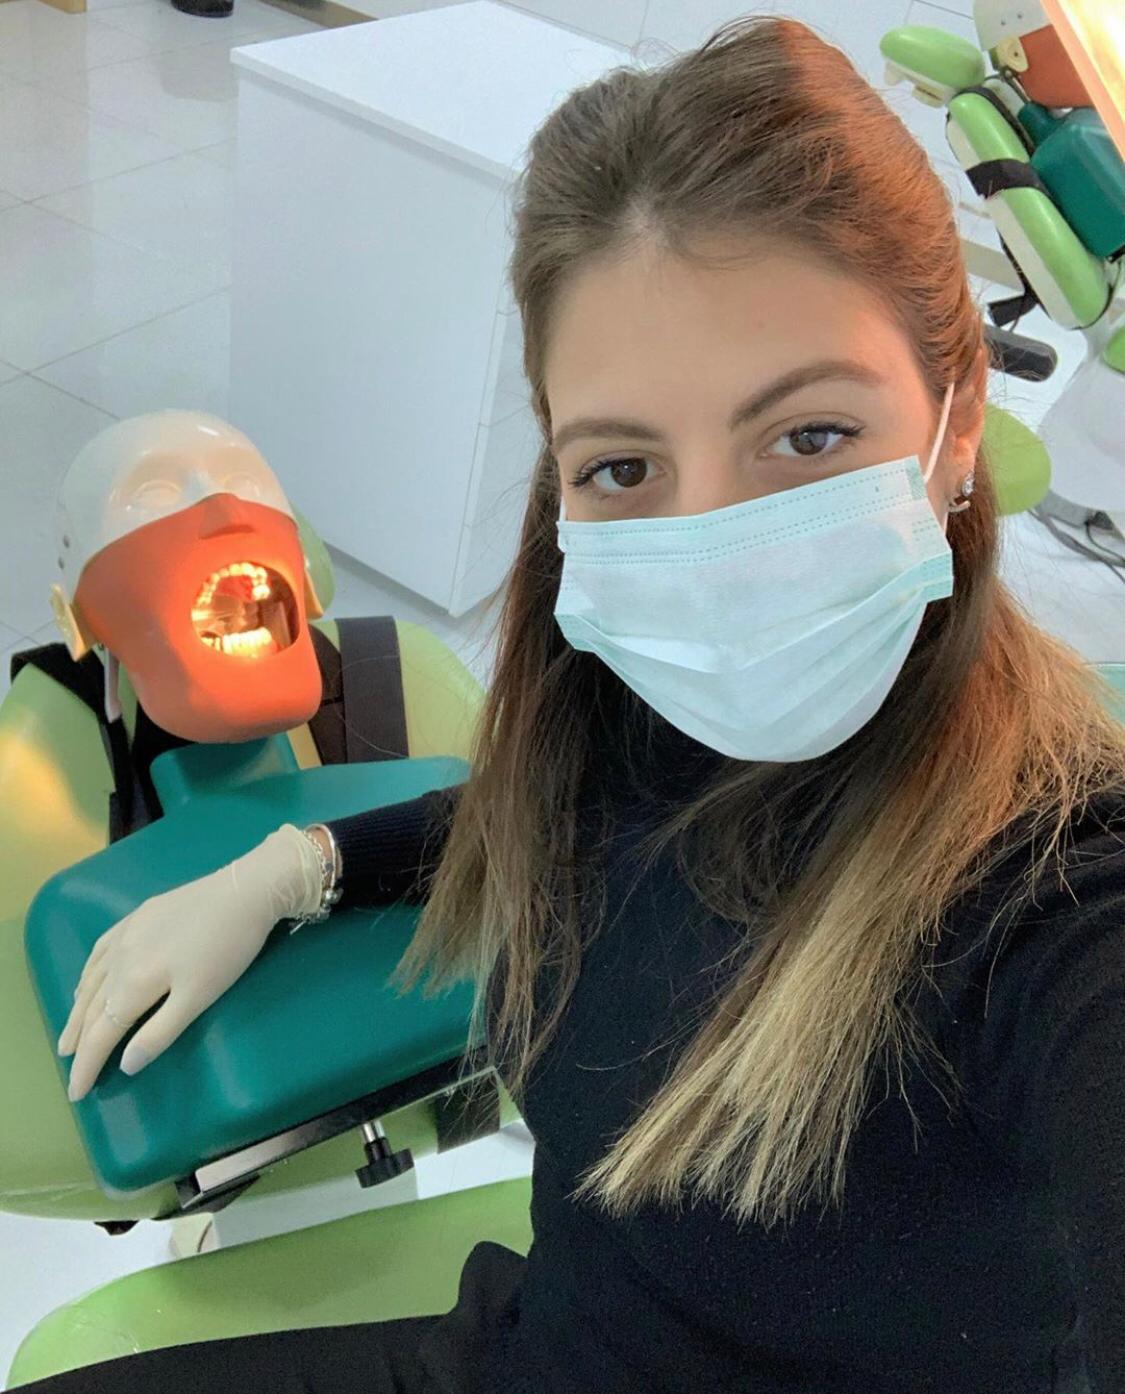 אנה רופאת השיניים שלכם. צילום פרטי